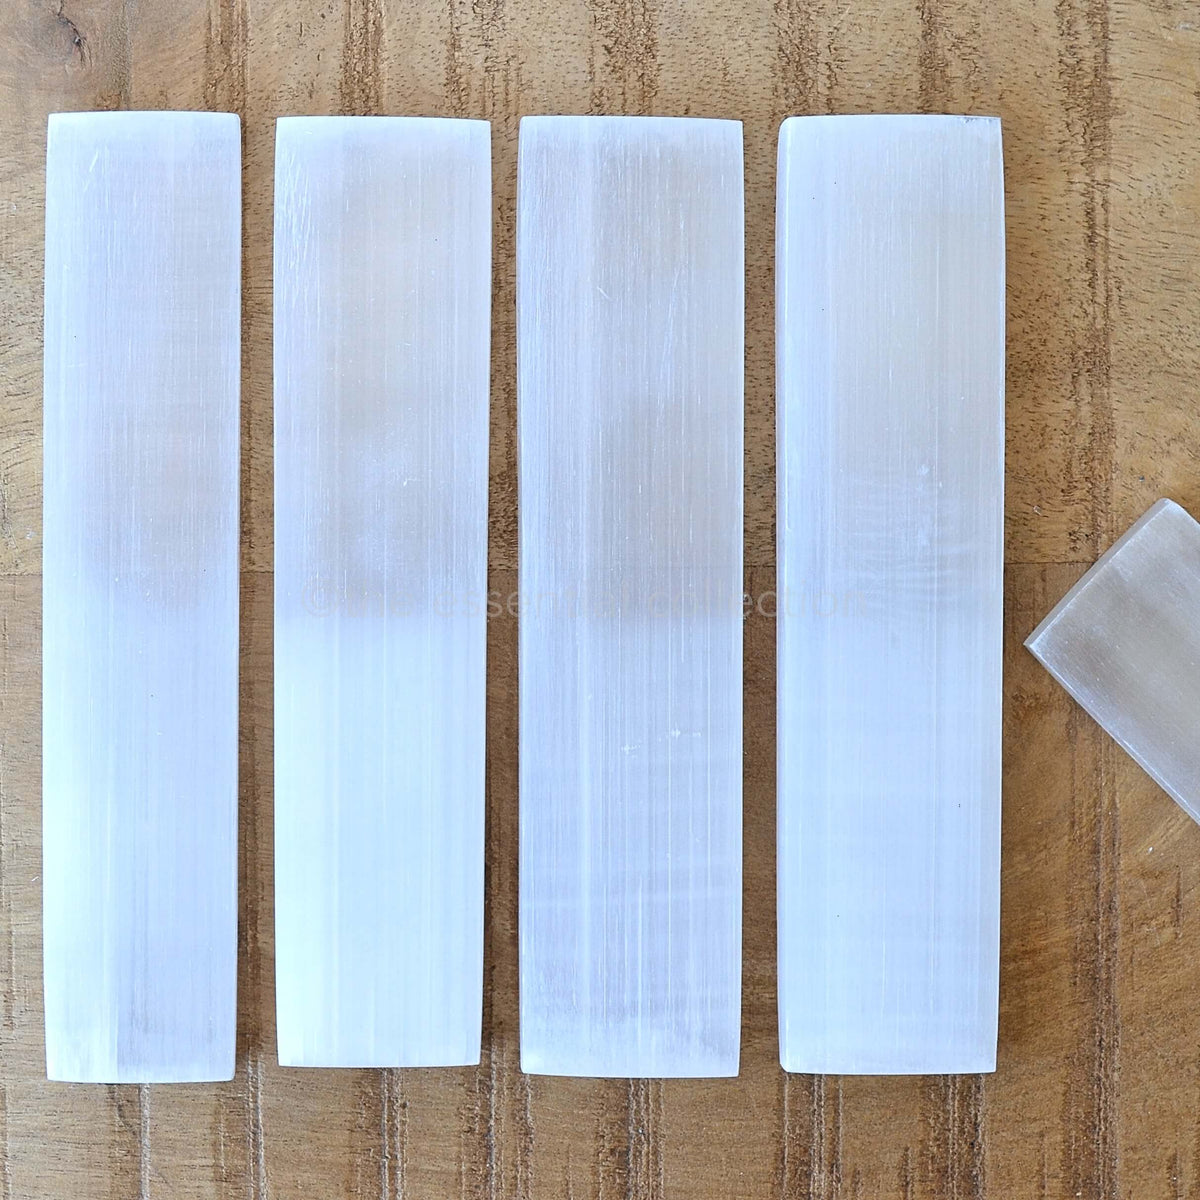 selenite rectangular charing plates rulers